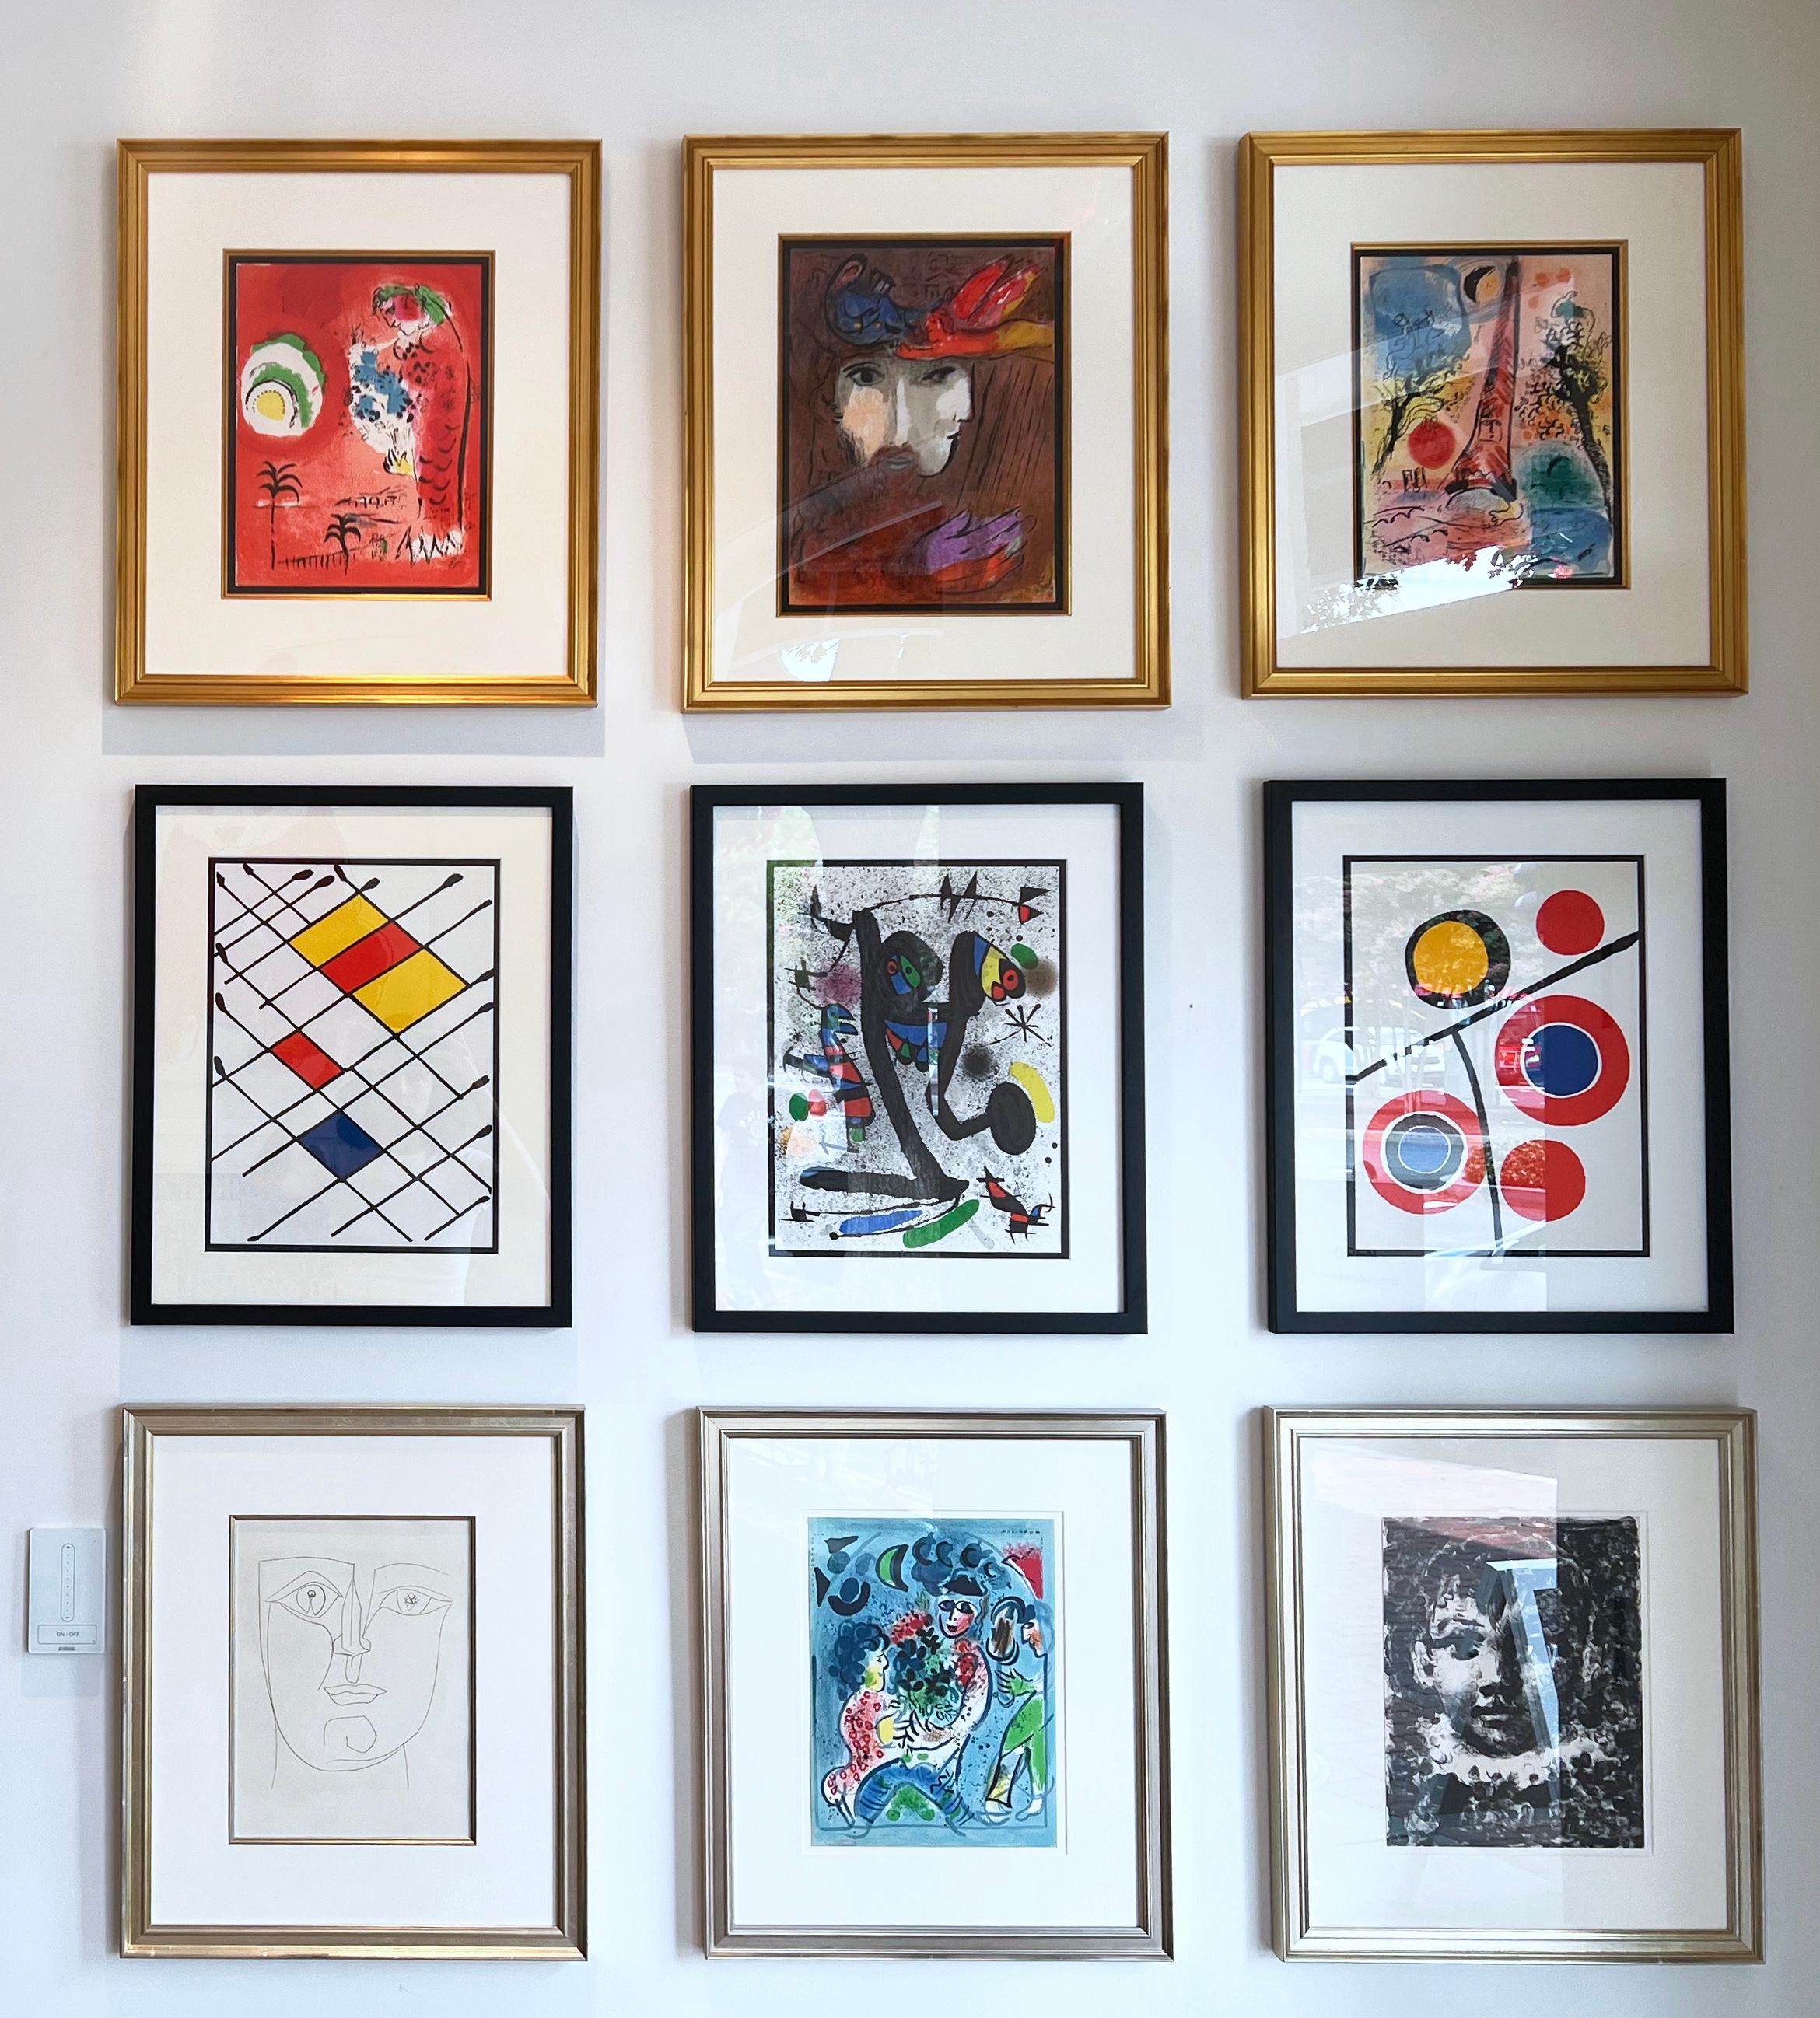 Künstler: Alexander Calder
Medium: Lithographie
Titel: Derriere le Miroir #201
Portfolio: Derriere le Miroir #201
Jahr: 1973
Auflage: Unnumeriert
Gerahmt Größe: 21 1/4